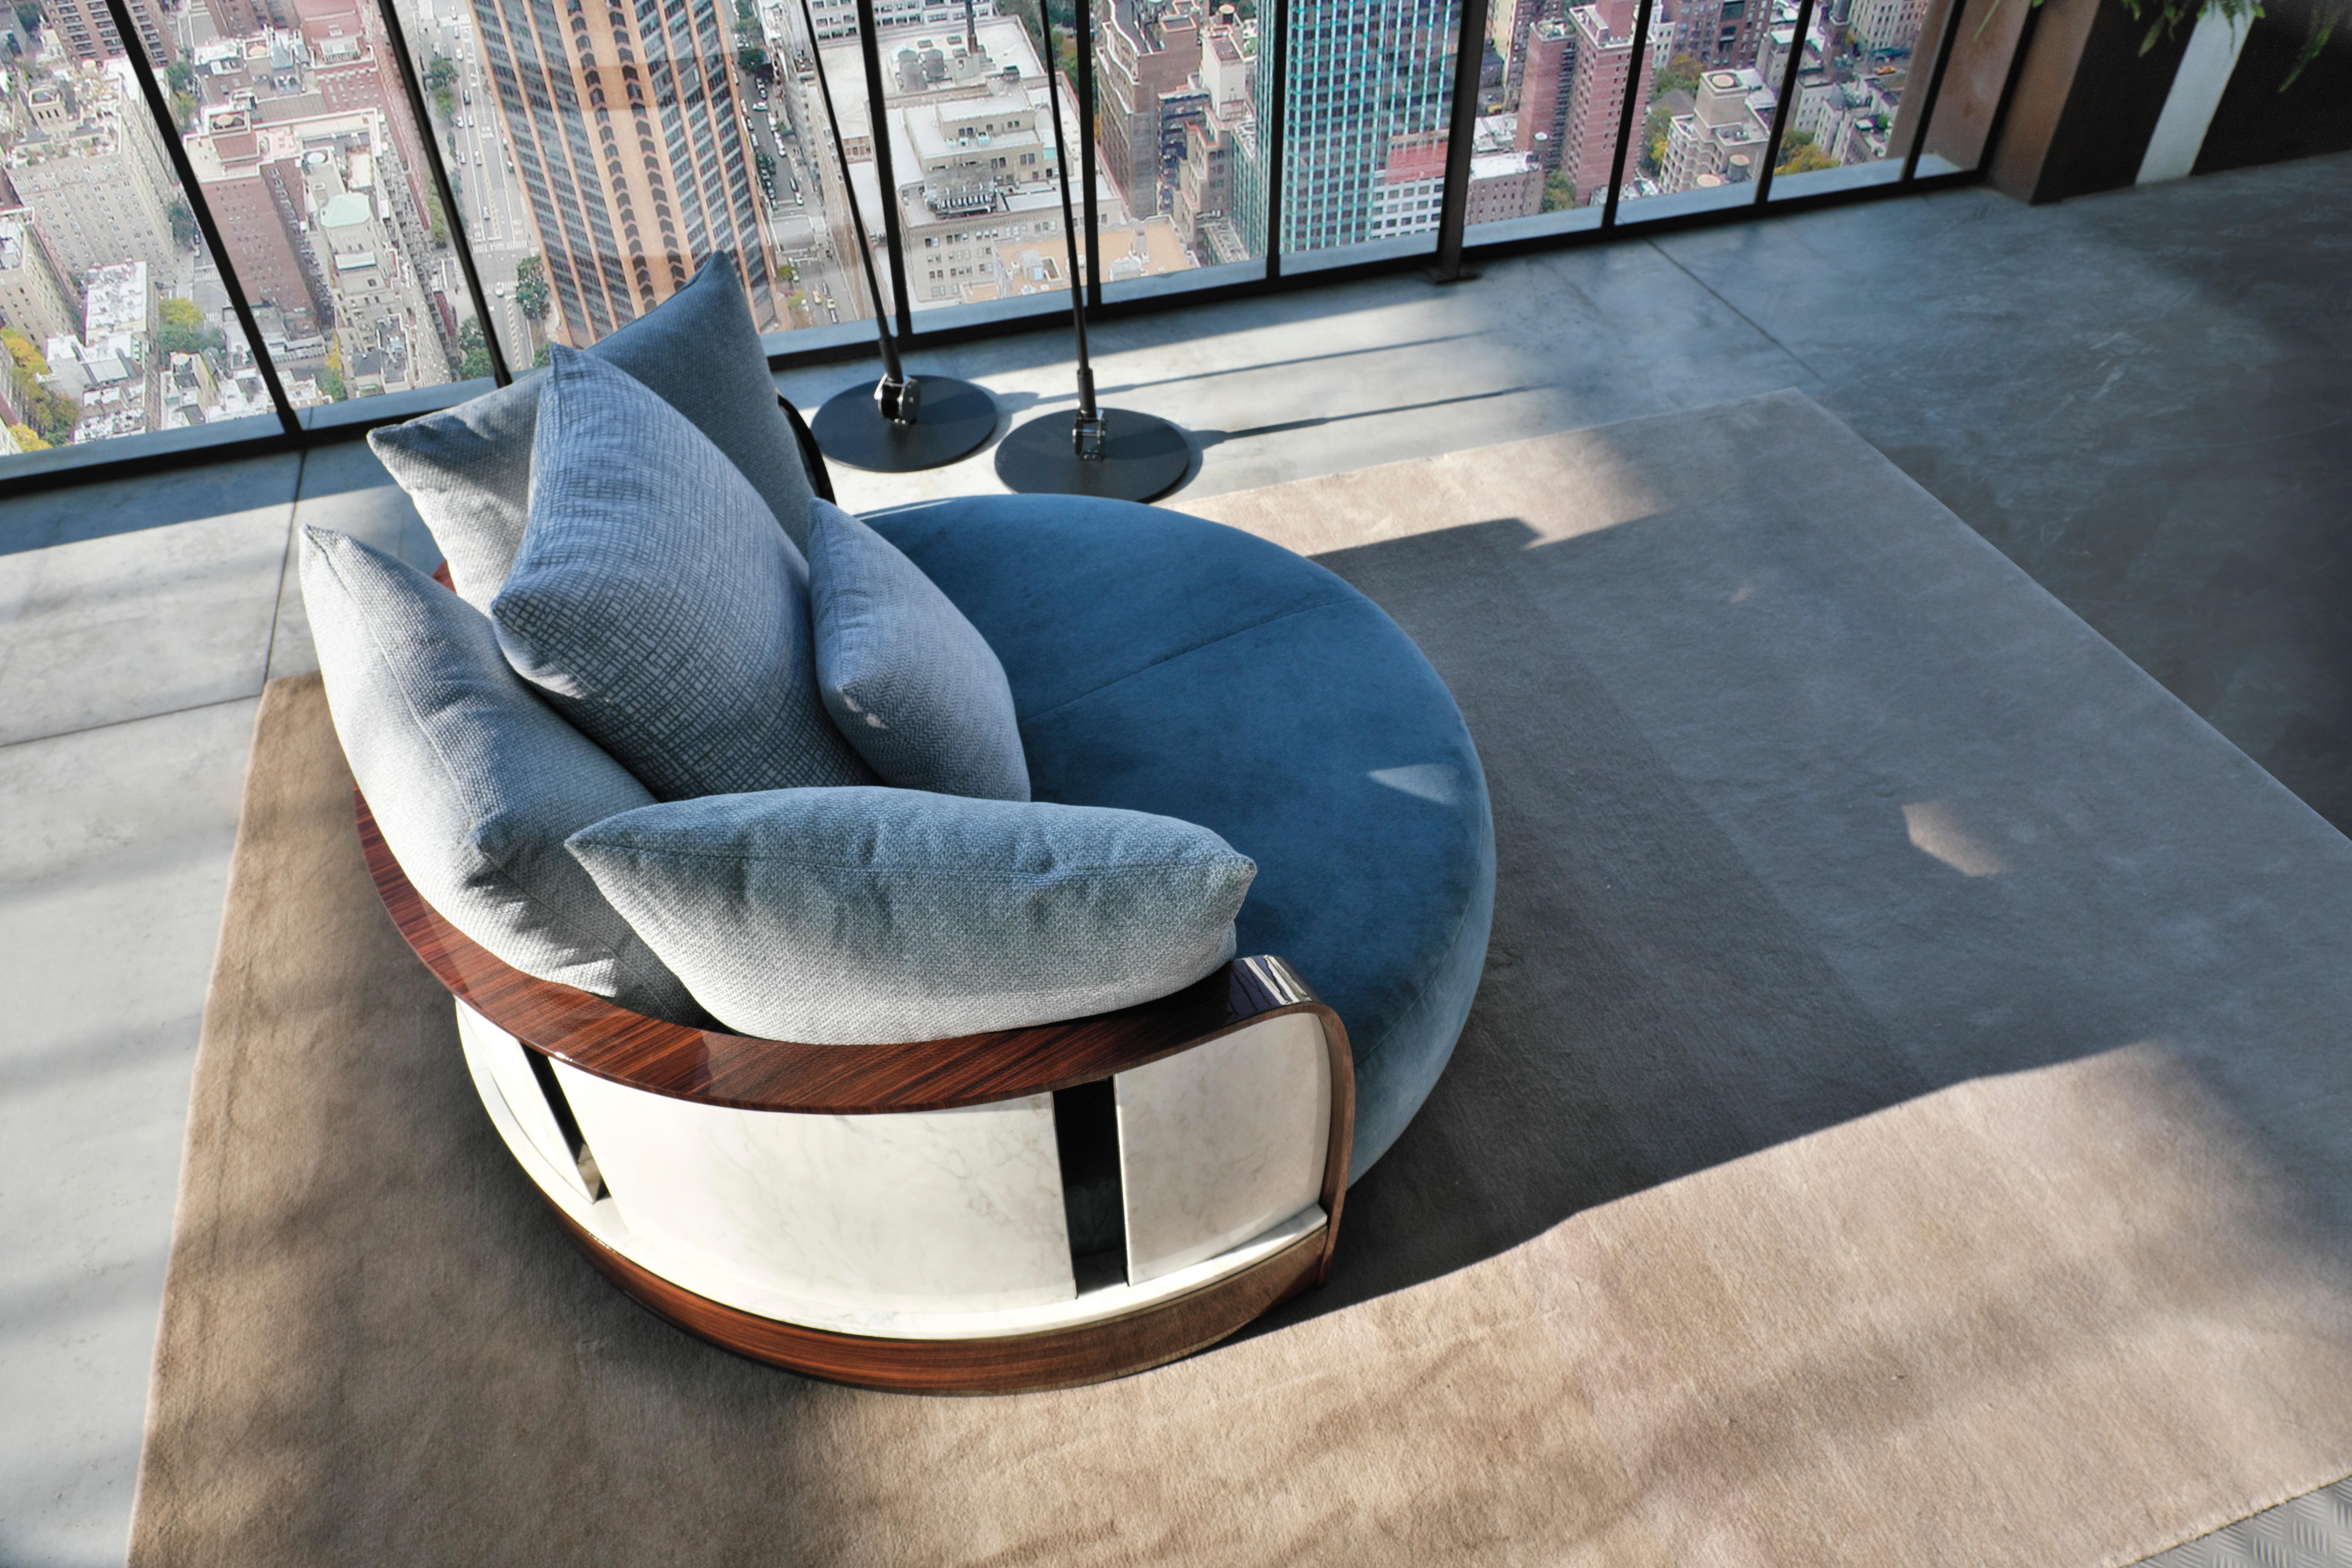 Eine fließende und harmonische Linie, die eine Idee von weichem, sinnlichem und zeitgenössischem Stil vermittelt. Entworfen für den Wohnbereich und ein angenehmes Gefühl von Komfort. Das Sofa SPHERIC-O ist Teil einer von Luca Dini Design &